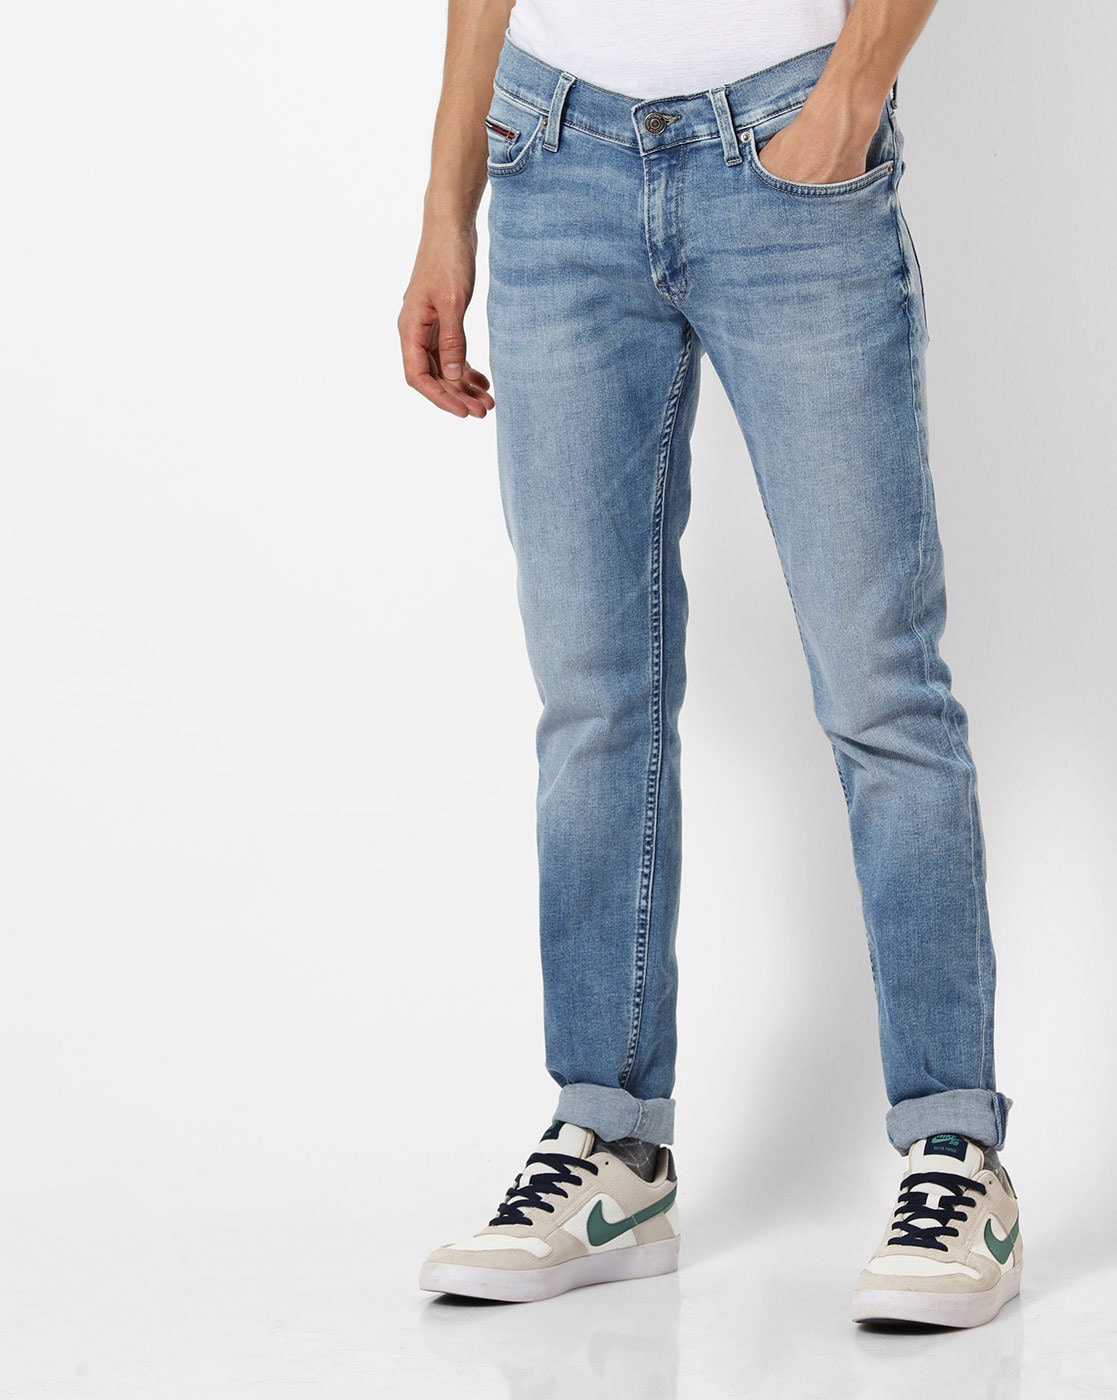 tommy hilfiger jeans outlet